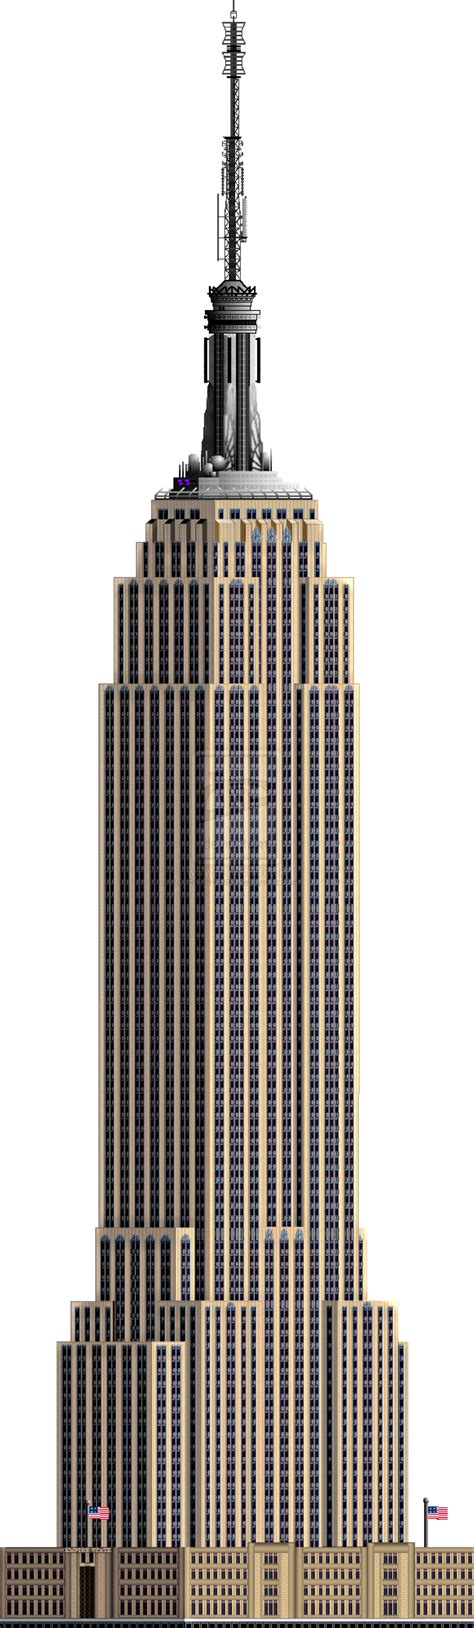 Skyline Empire State Building By Stir On Deviantart